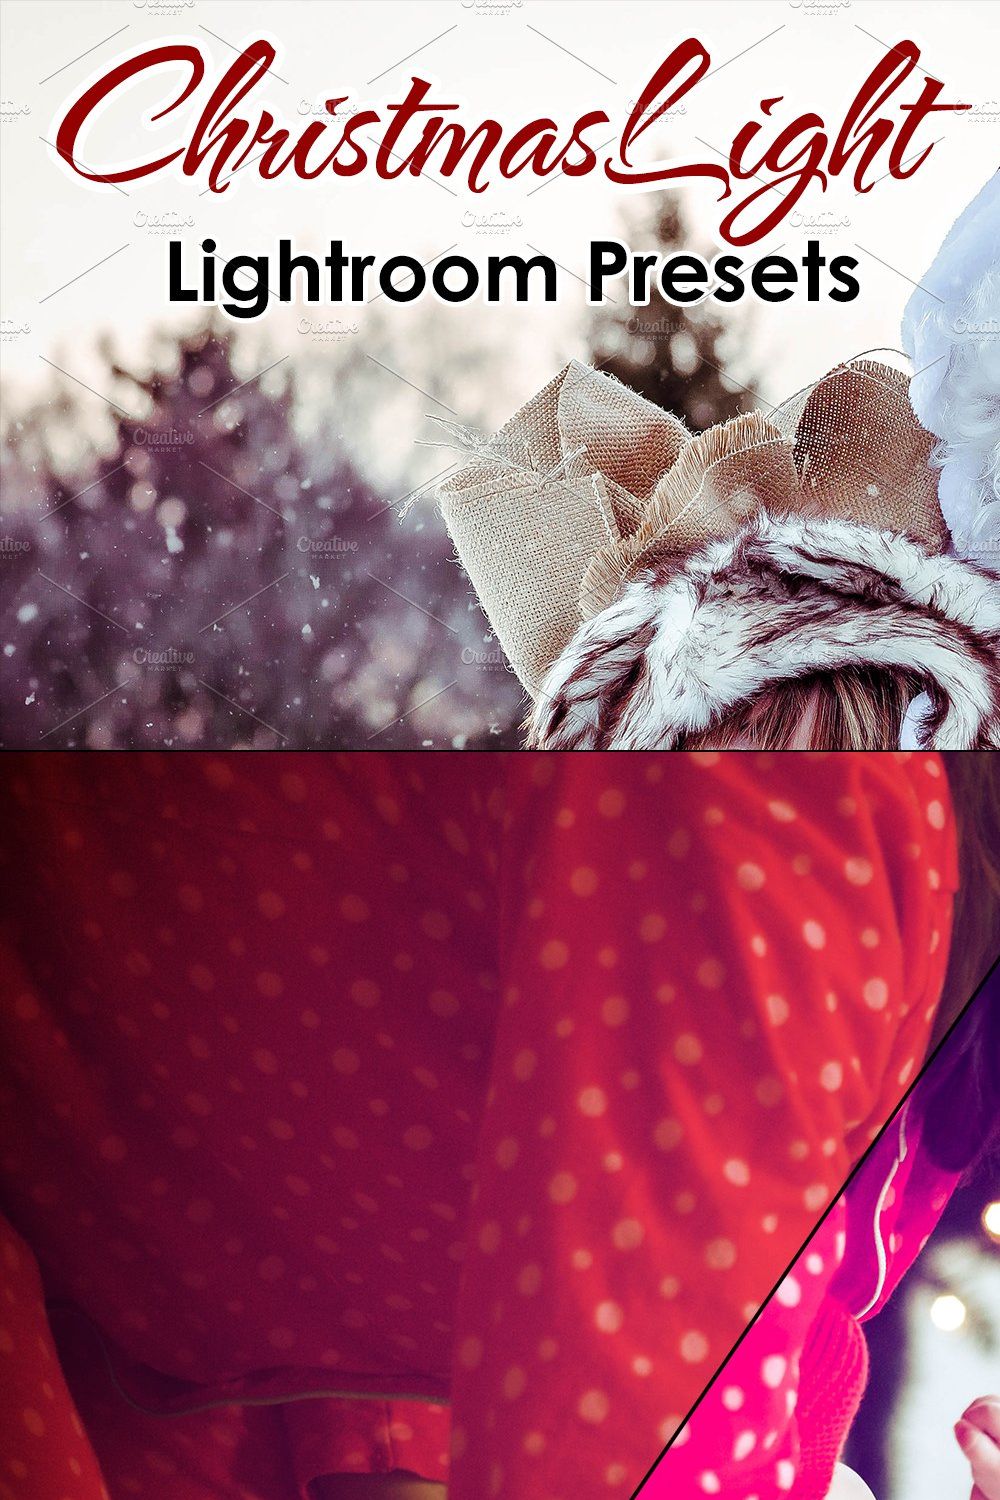 ChristmasLight - Lightroom Presets pinterest preview image.